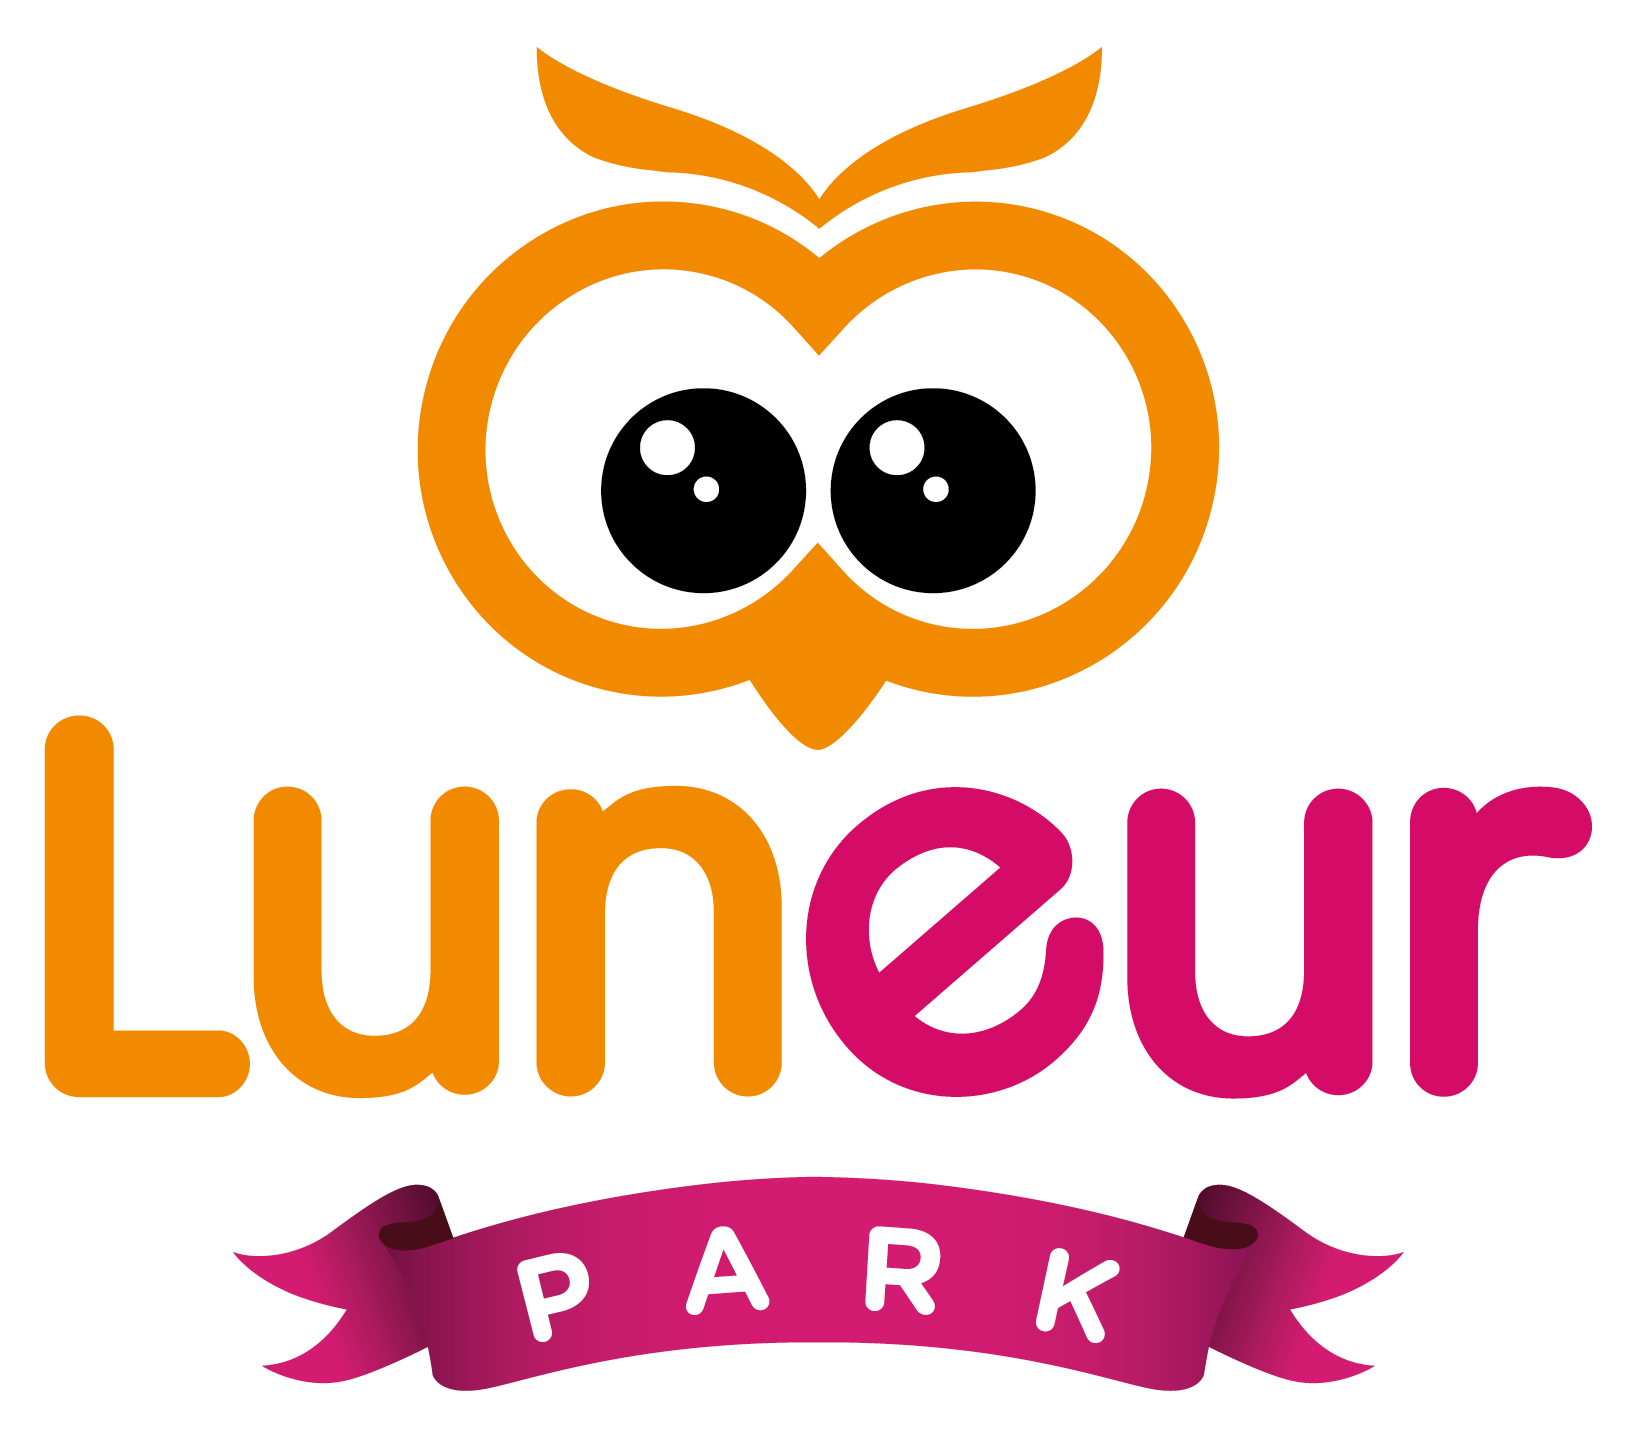 Scuole e parrocchie Luneur Park 1